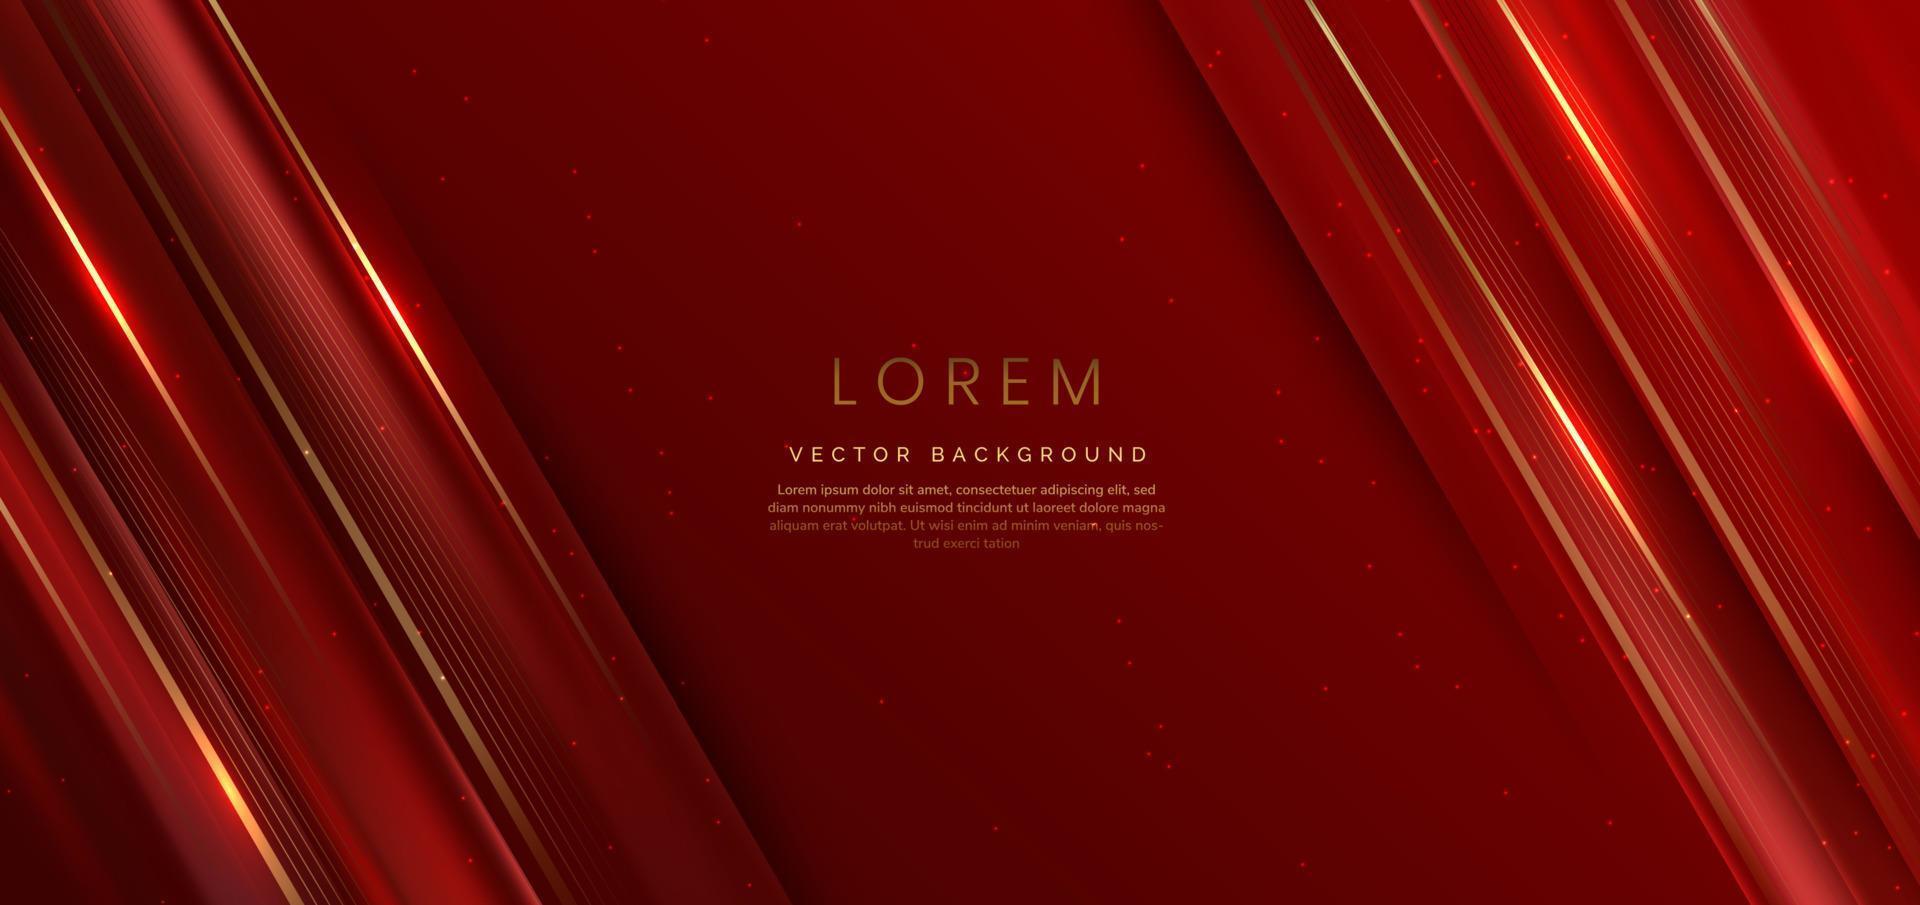 abstrait fond rouge élégant avec une ligne dorée et un effet d'éclairage scintillant. conception de modèle de luxe. vecteur